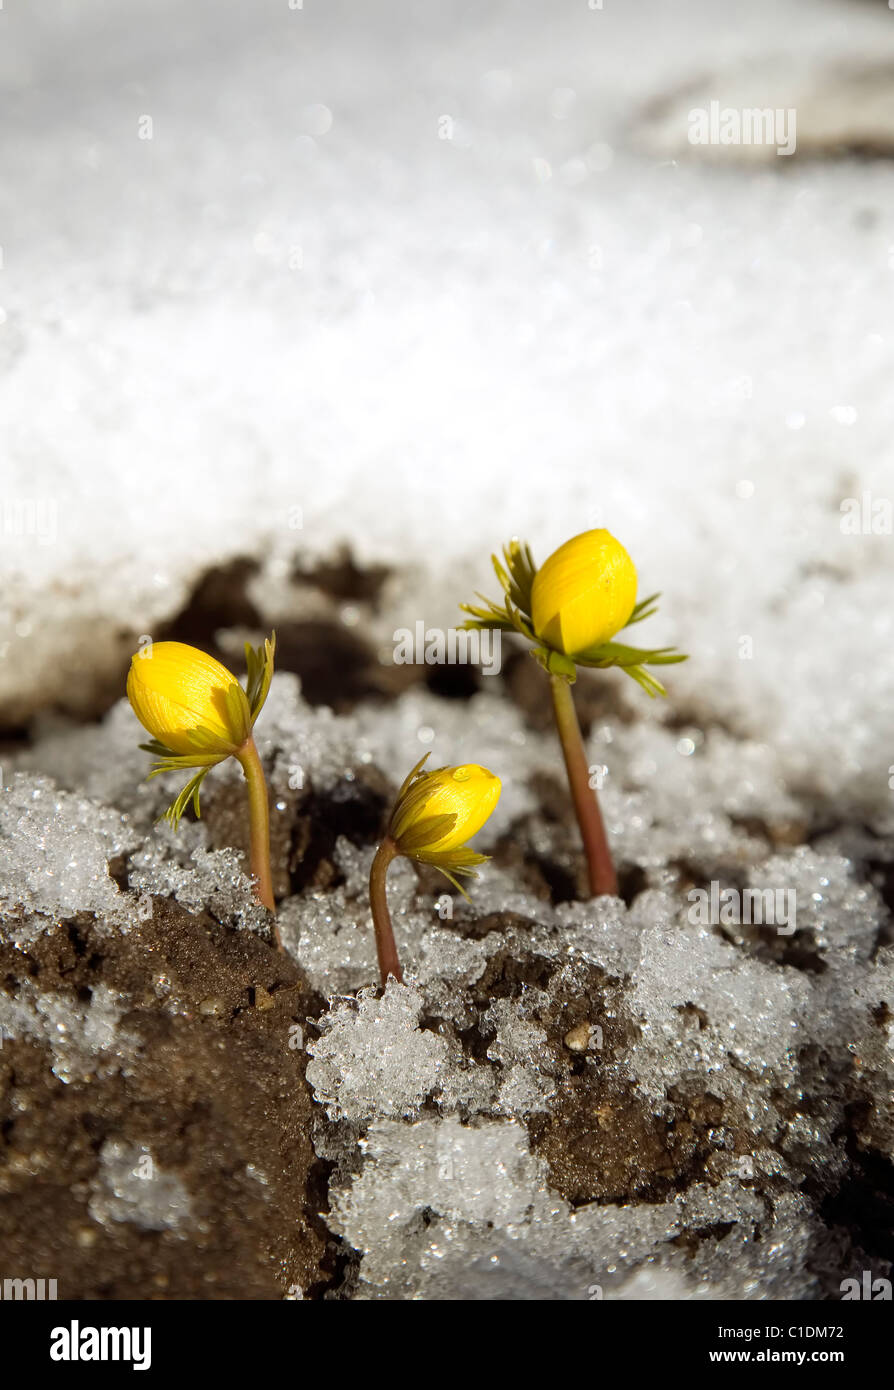 Yellow flower on soil, snow around, spring concept Stock Photo